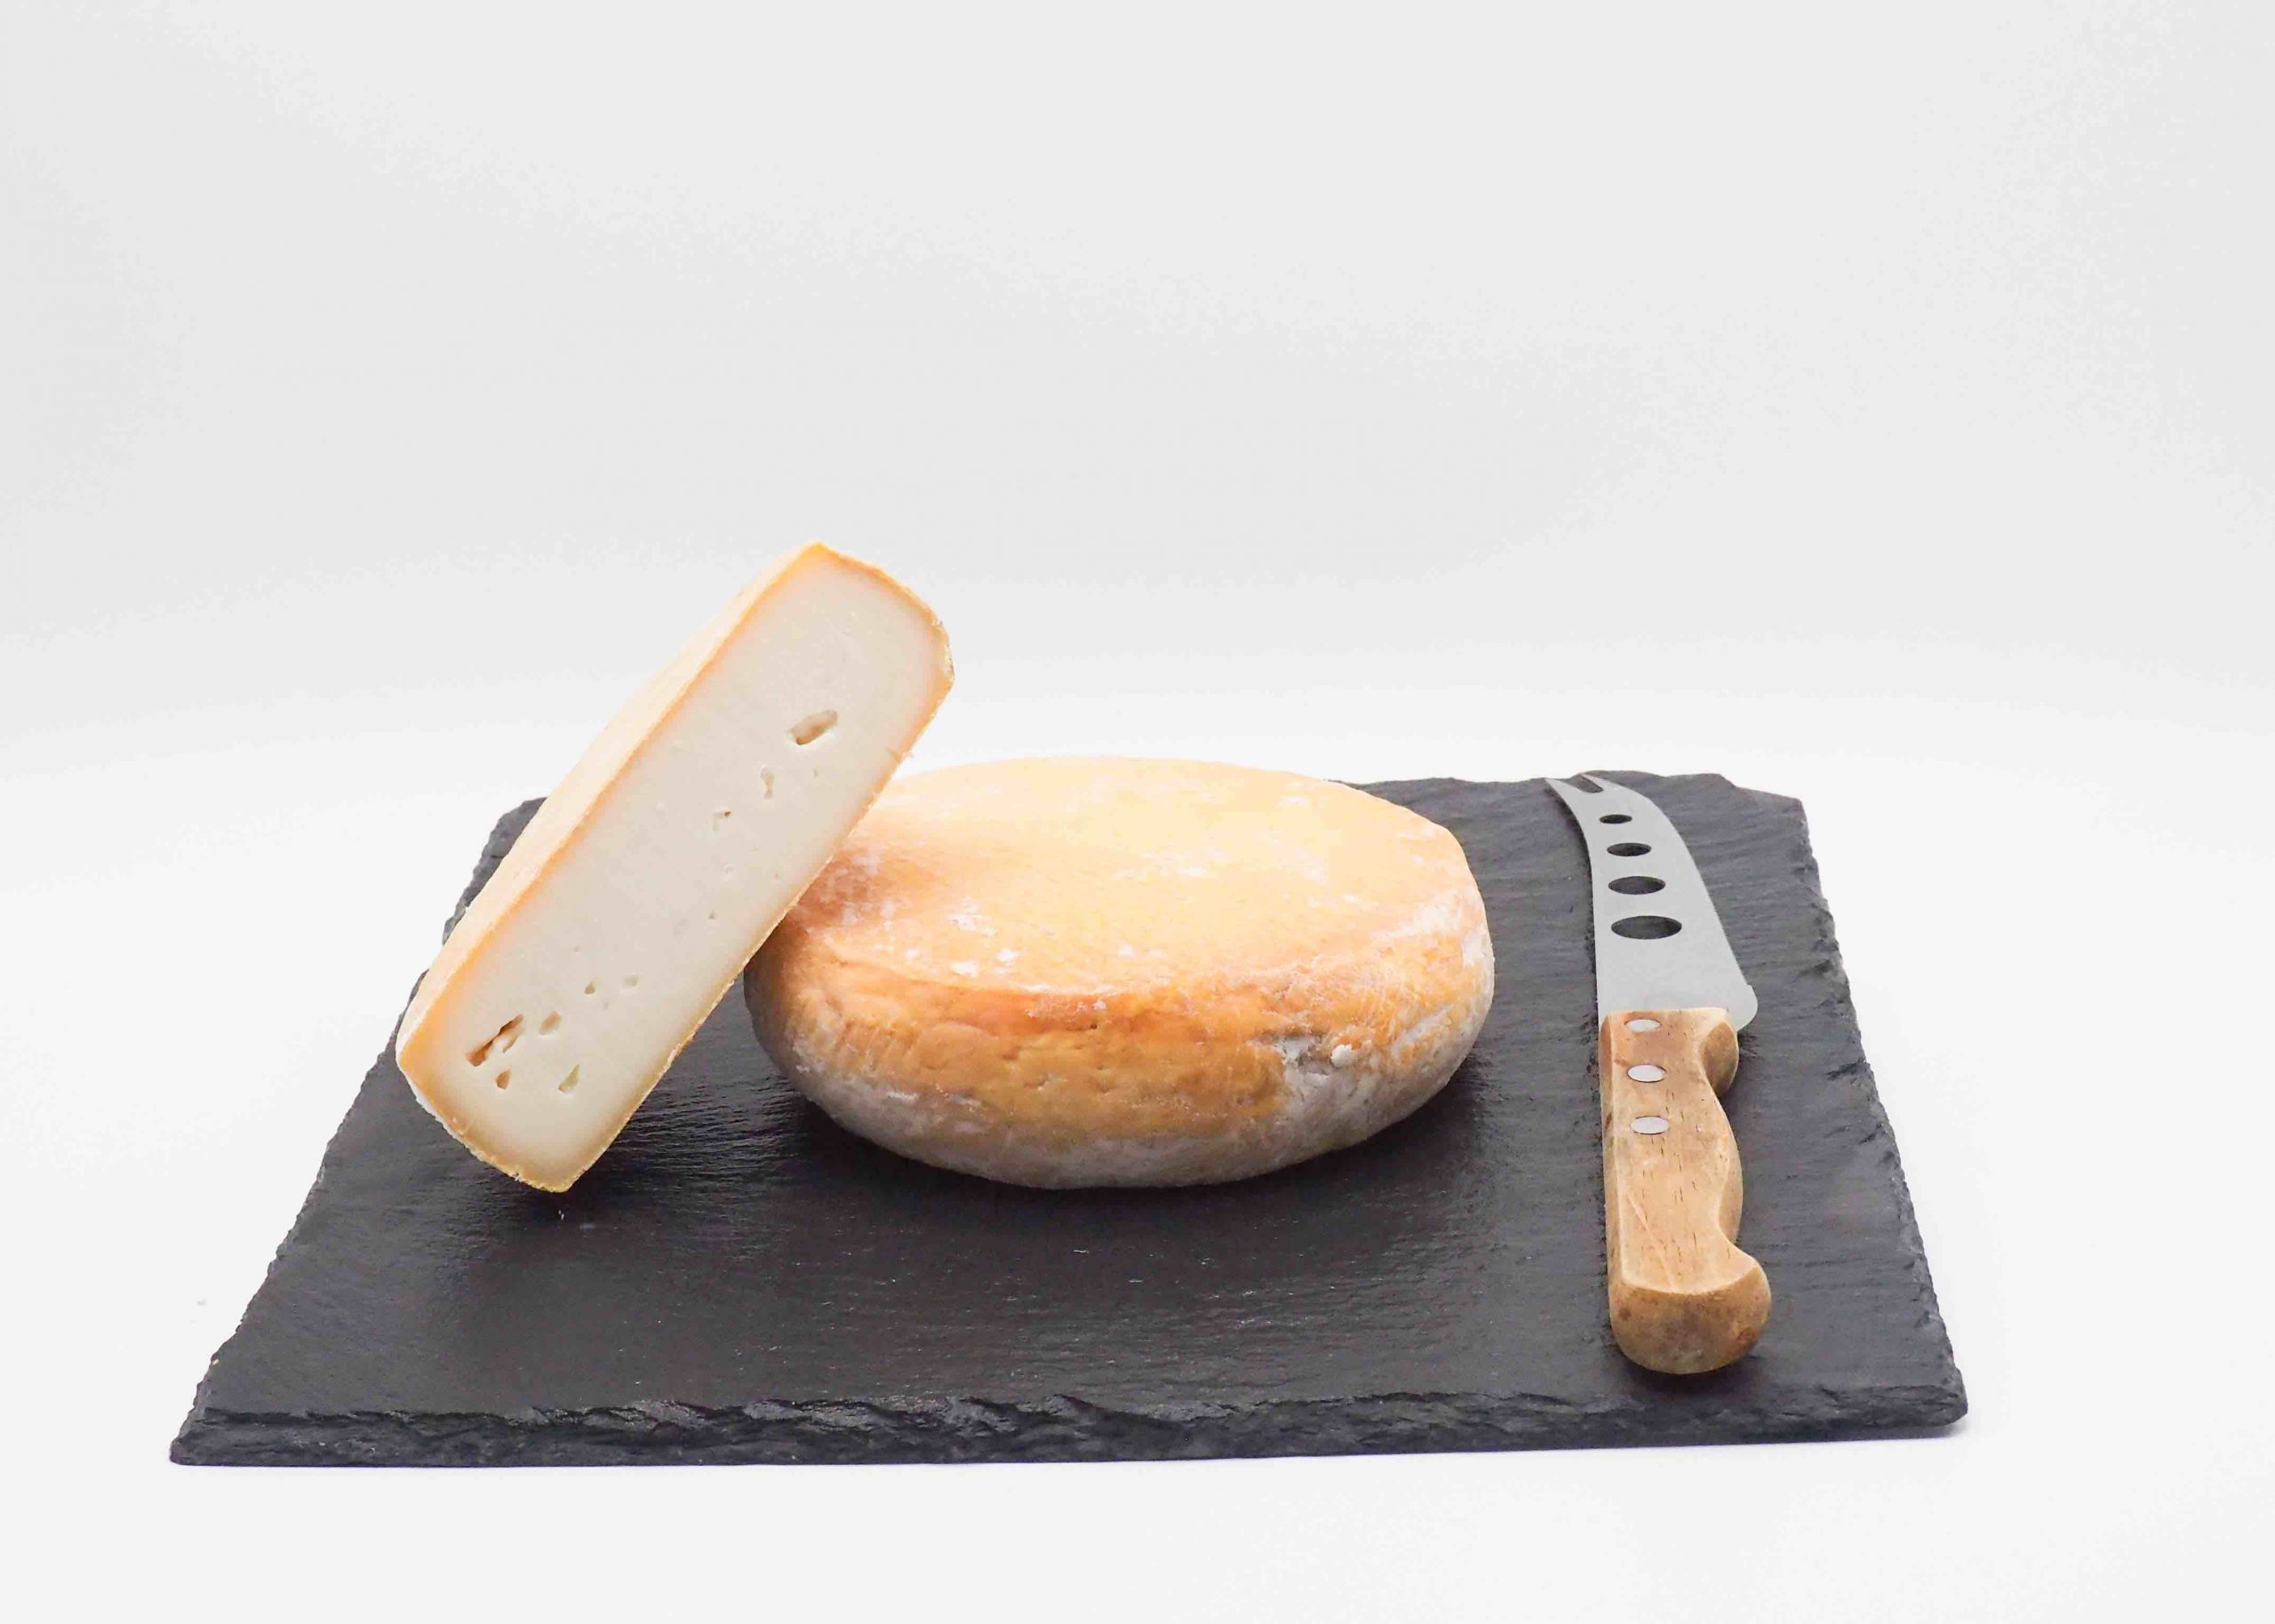 Achetez le Petit Fiancé. Vente de fromage en ligne par un Meilleur Ouvrier de France avec livraison à domicile